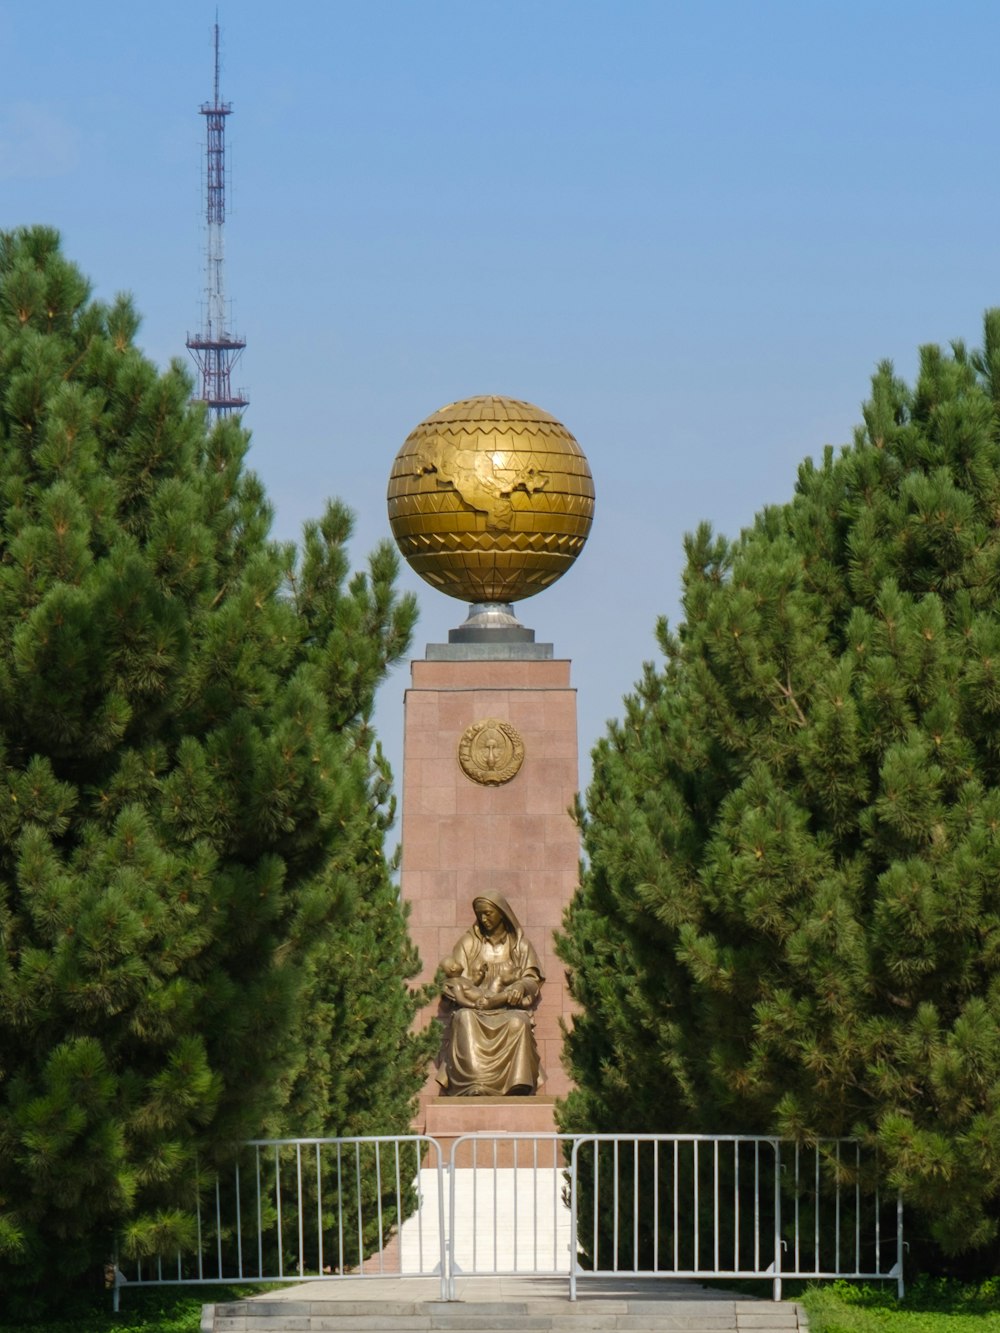 Statua della palla d'oro vicino agli alberi verdi durante il giorno